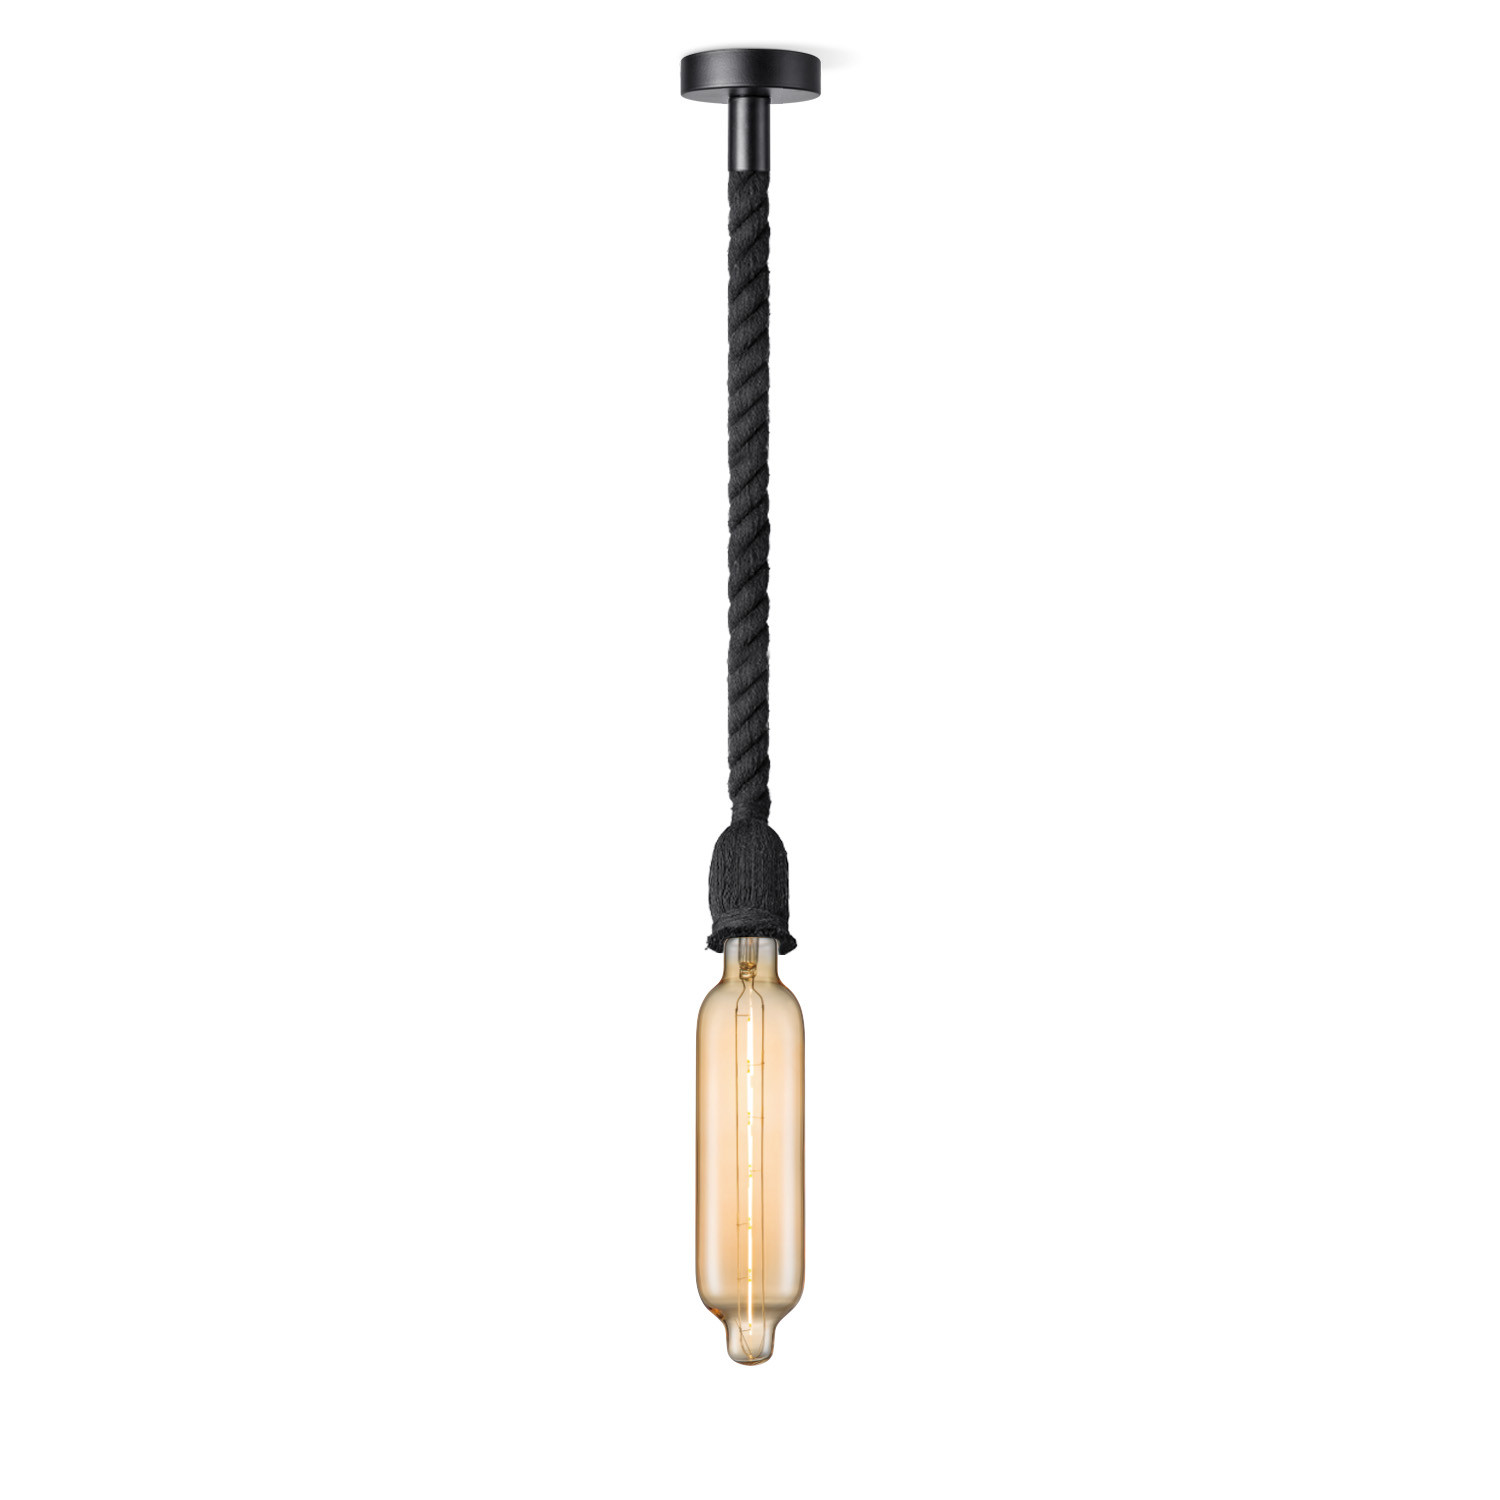 Light depot - hanglamp Leonardo zwart Tube - amber - Outlet